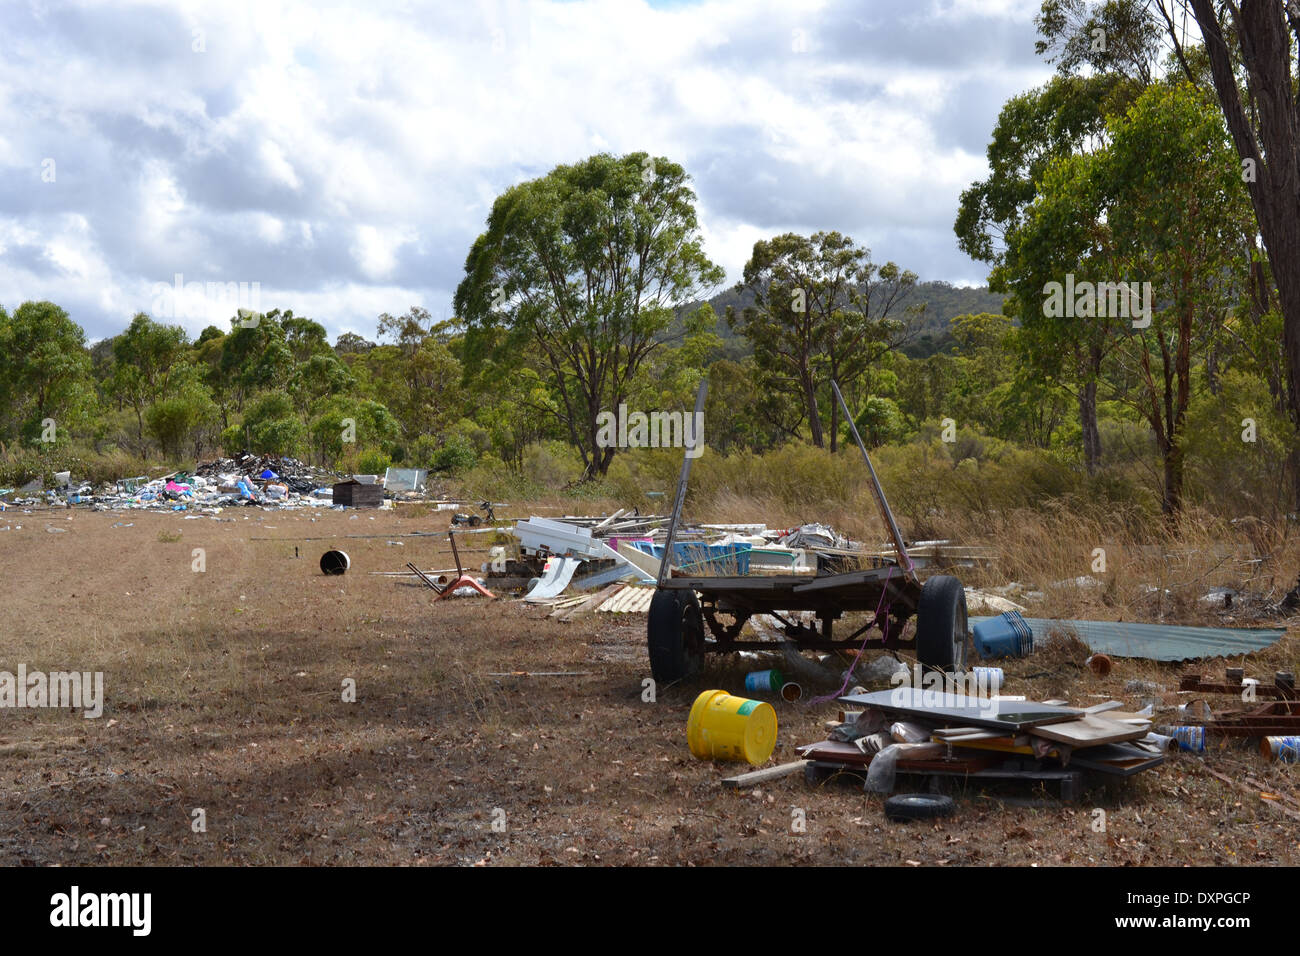 Rubbish dumped in outback Australia Stock Photo